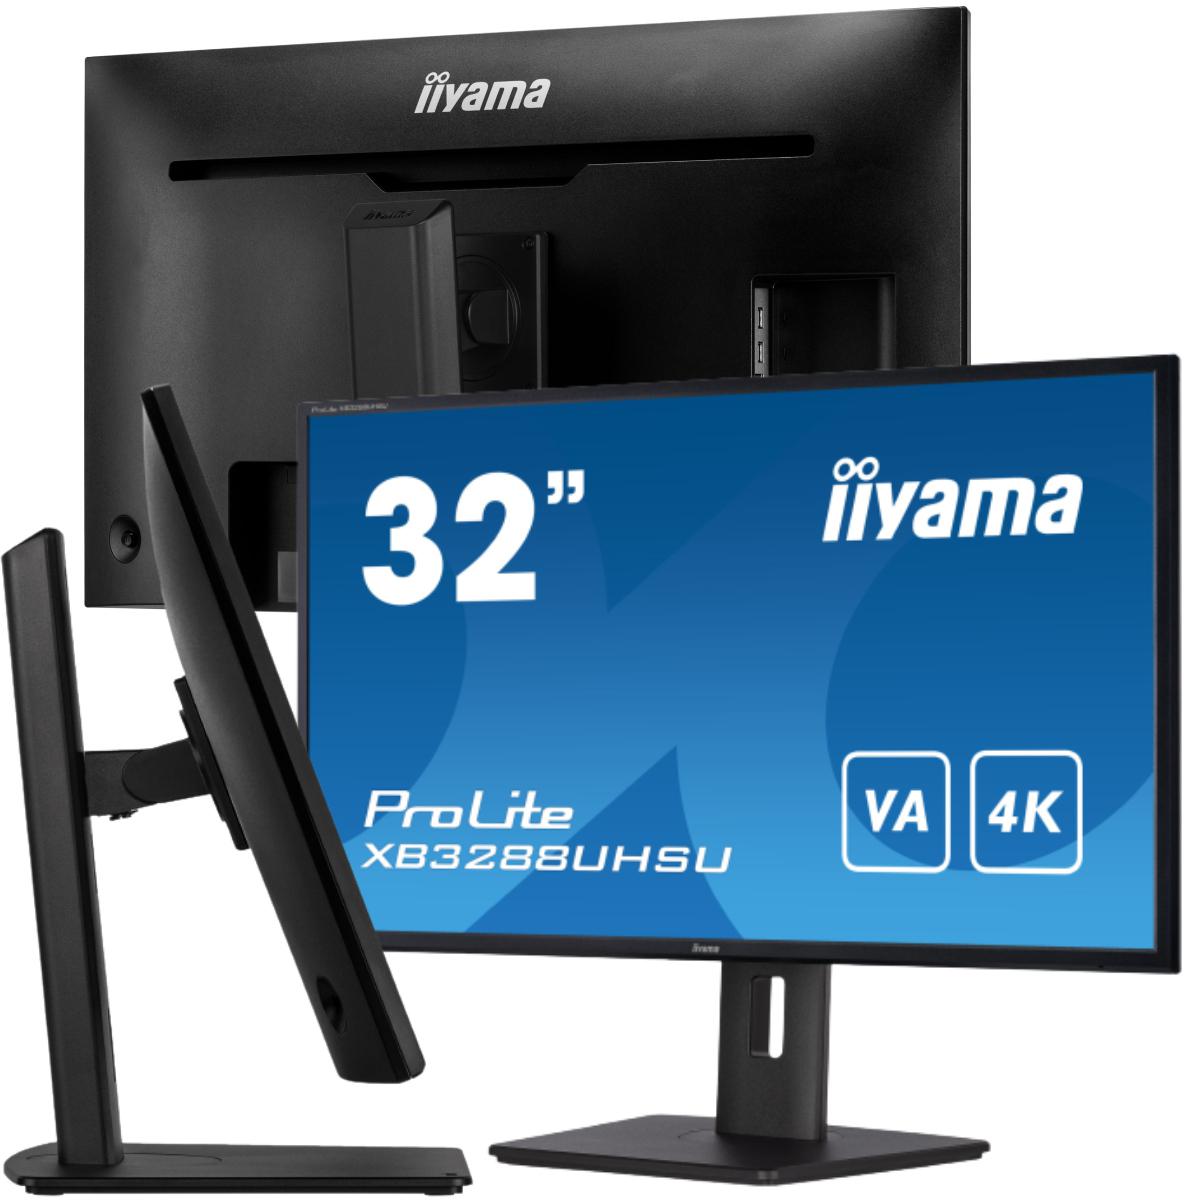 IIYAMA ProLite XB3288UHSU-B5 monitor LED 32' z panelem VA i rozdzielczością 4K - najważniejsze cechy: